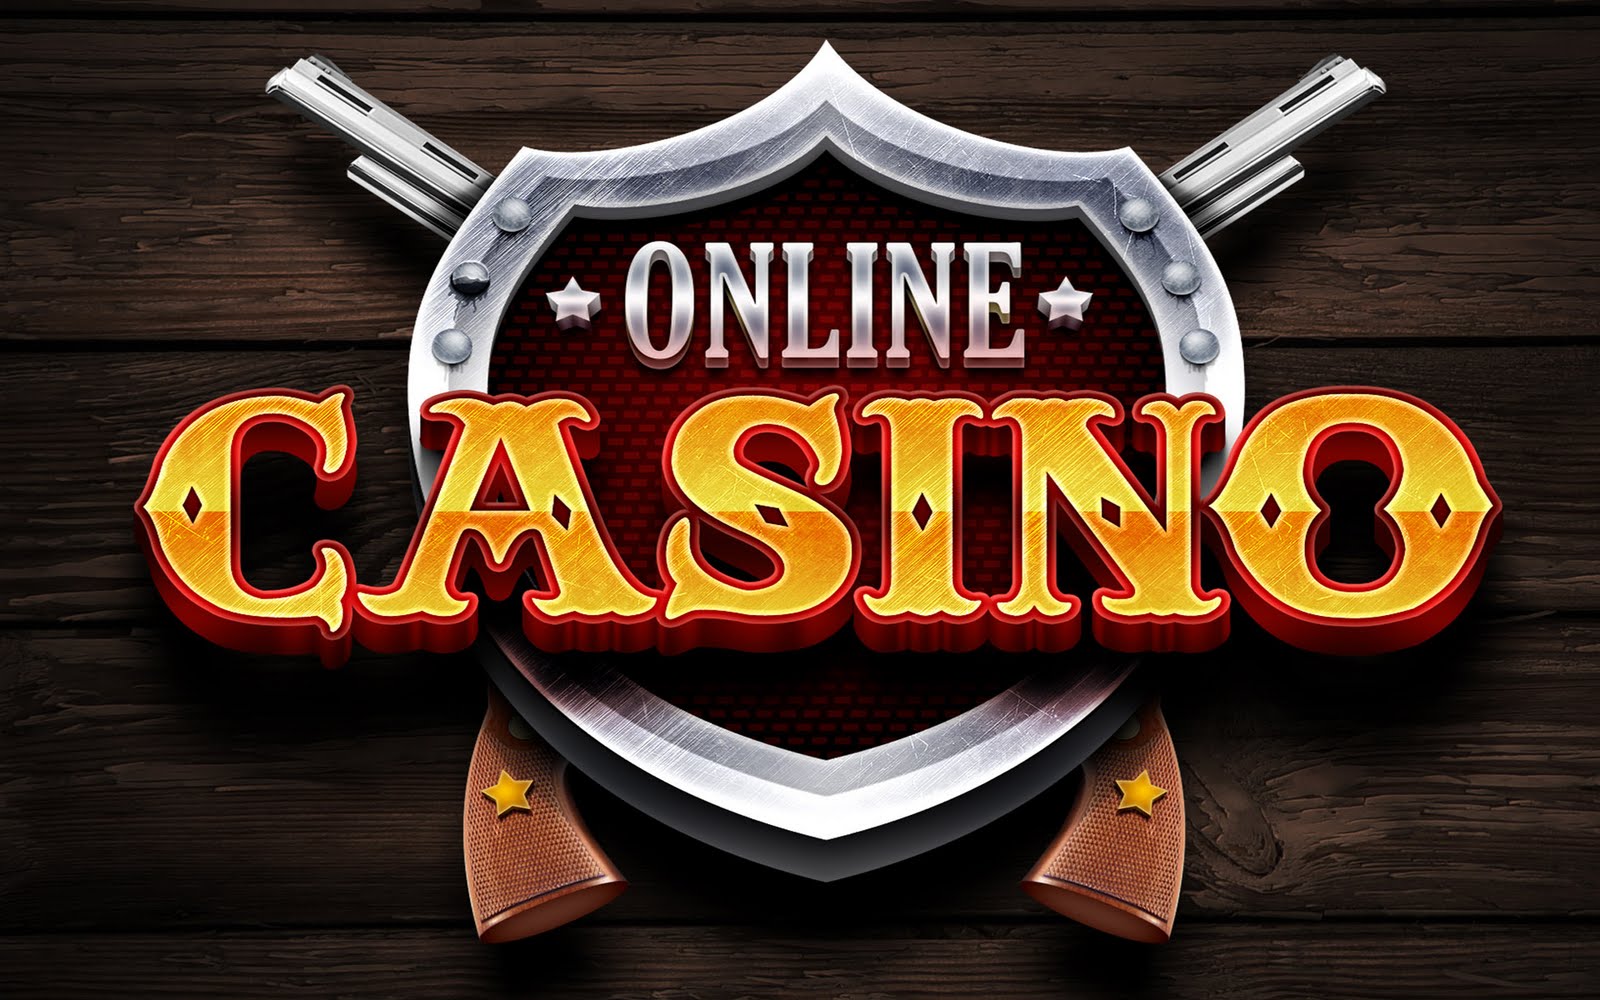 Onlone Casino